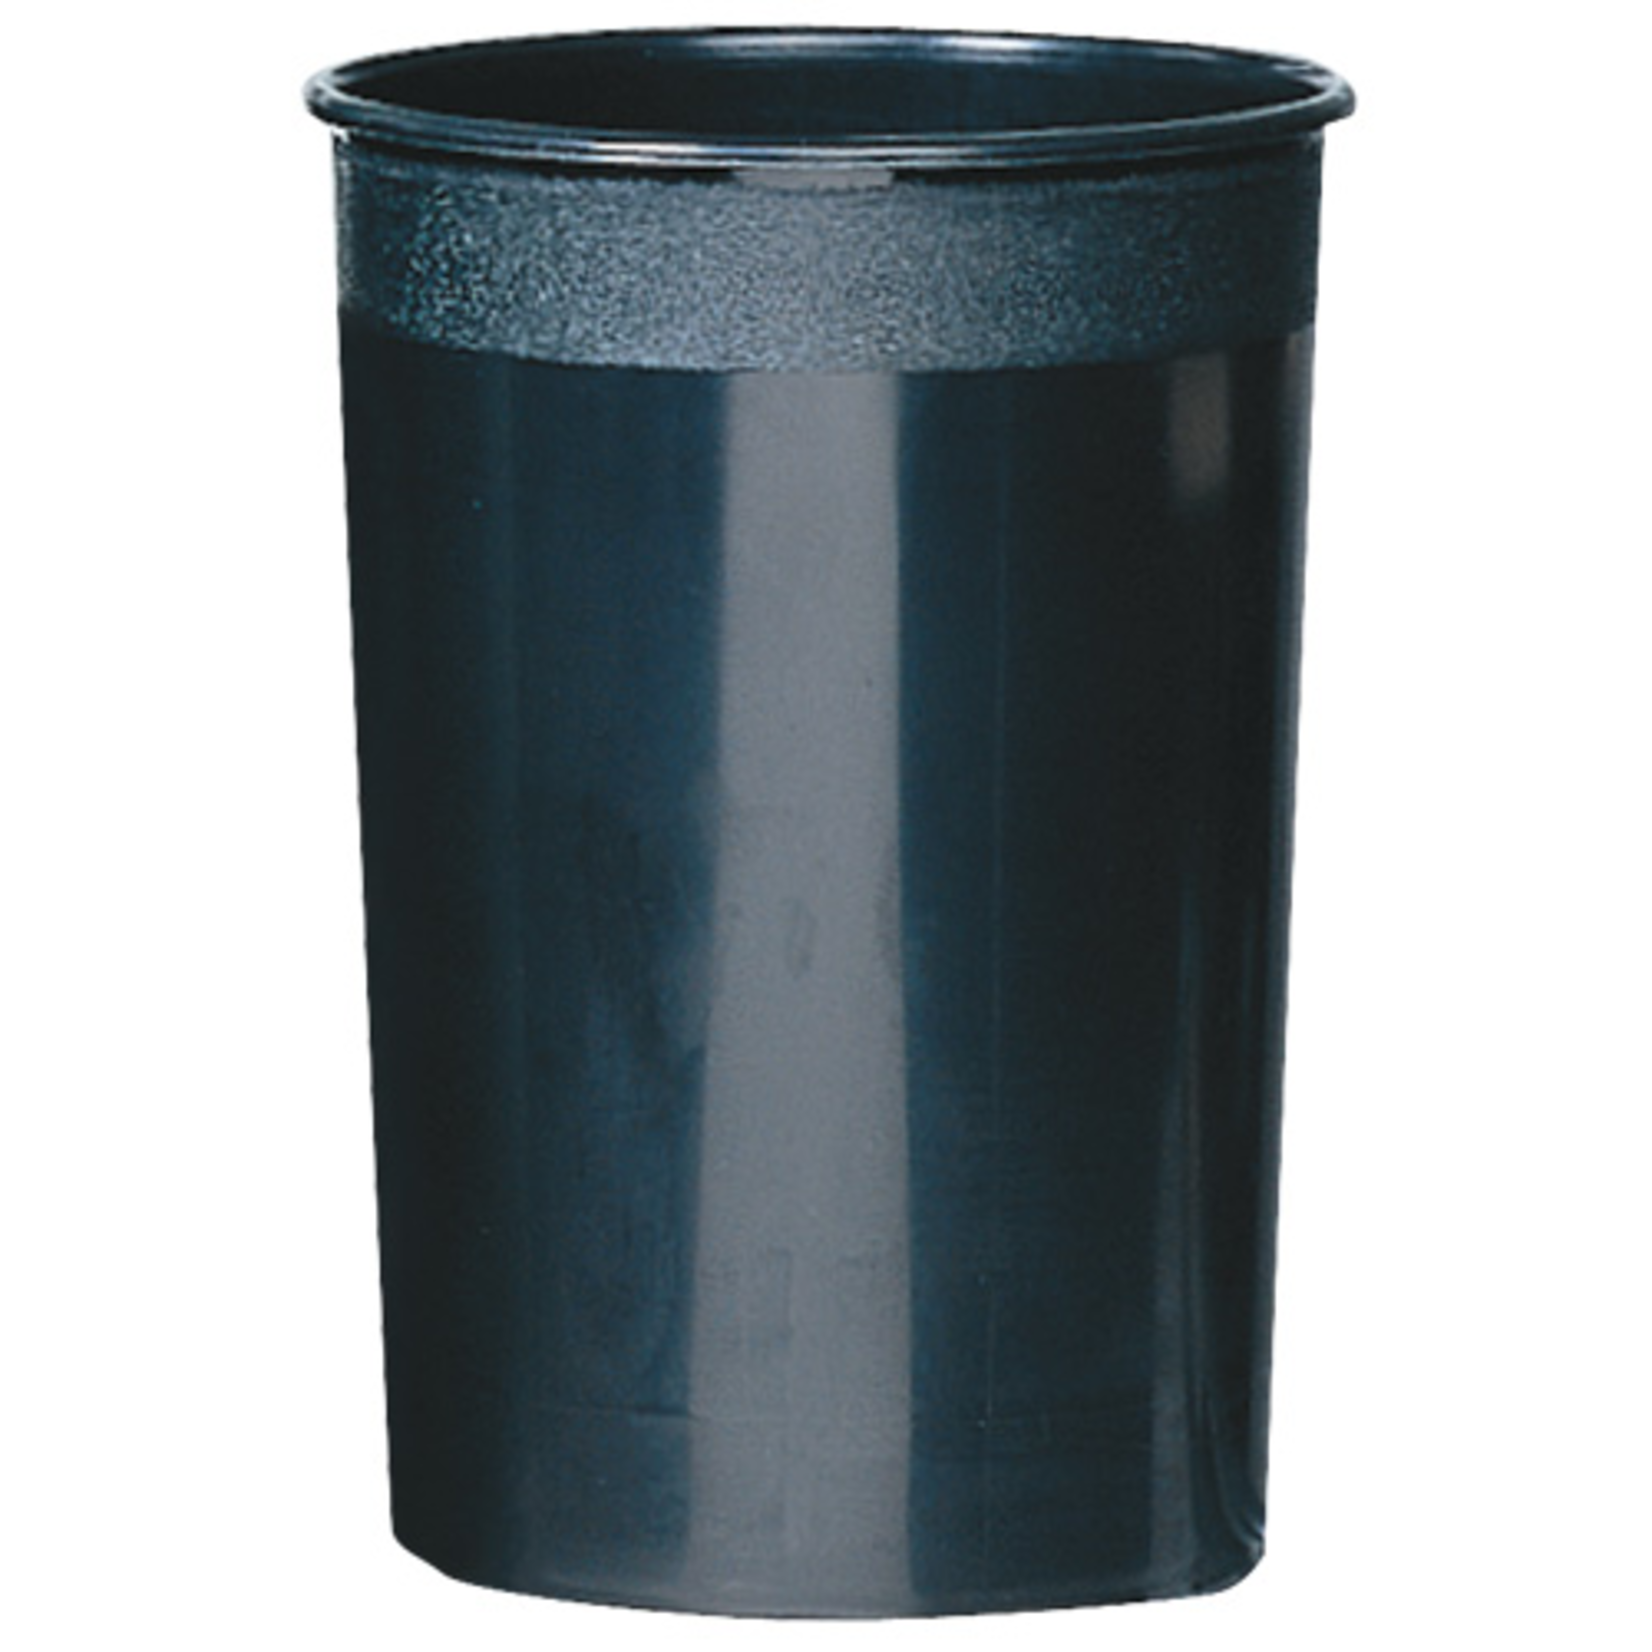 15"h X 10" Cooler Bucket - Black